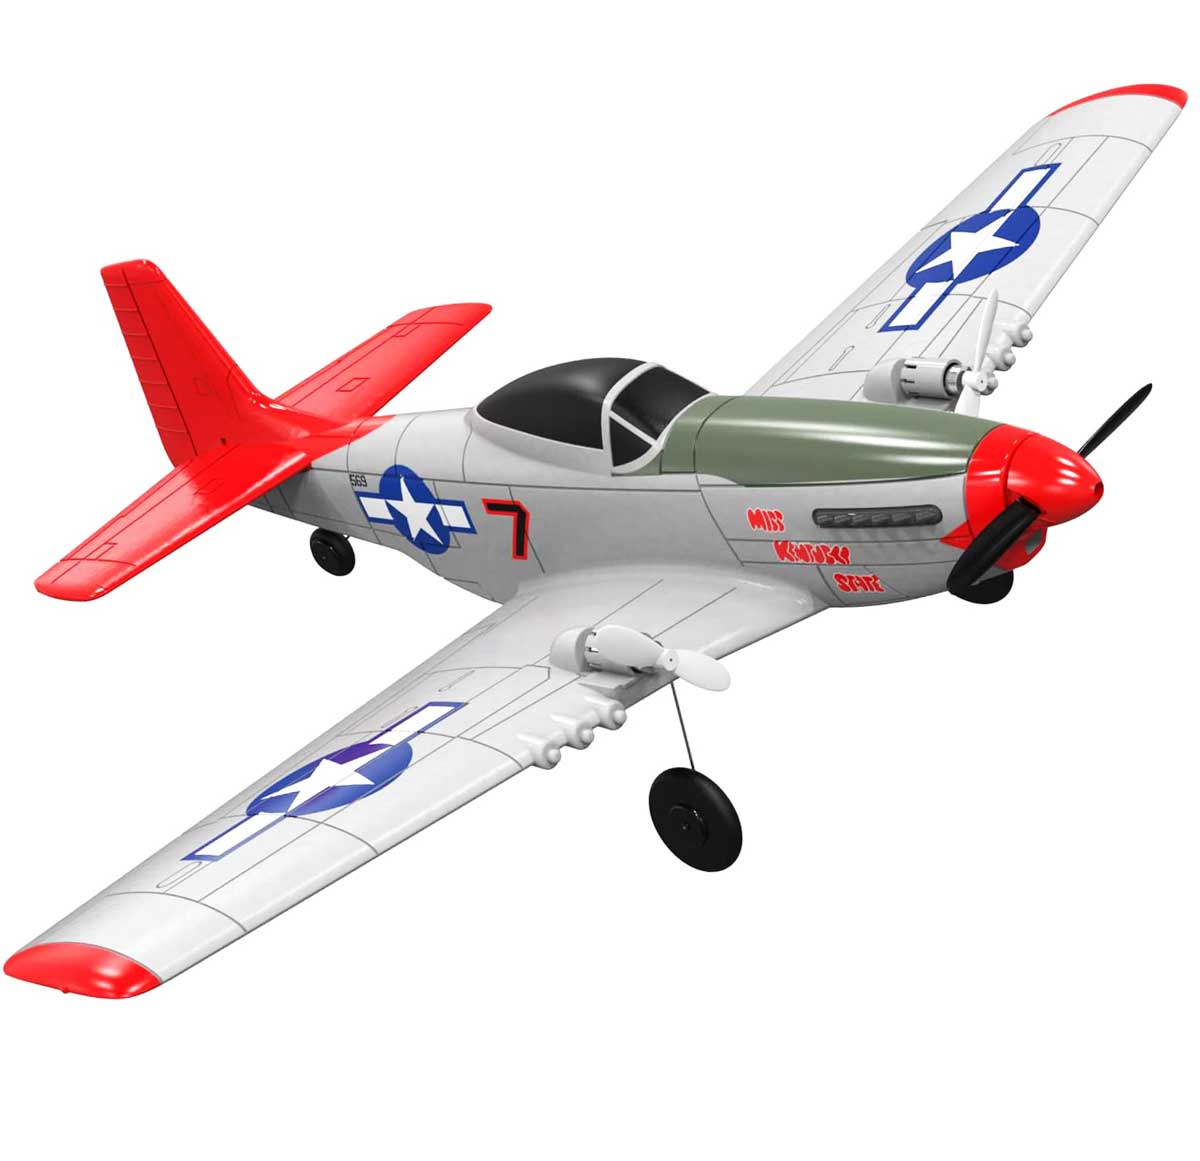 VOLANTEXRC P-51D Mustang Avión para principiantes de 2 canales con estabilizador giroscópico (762-3) RTF